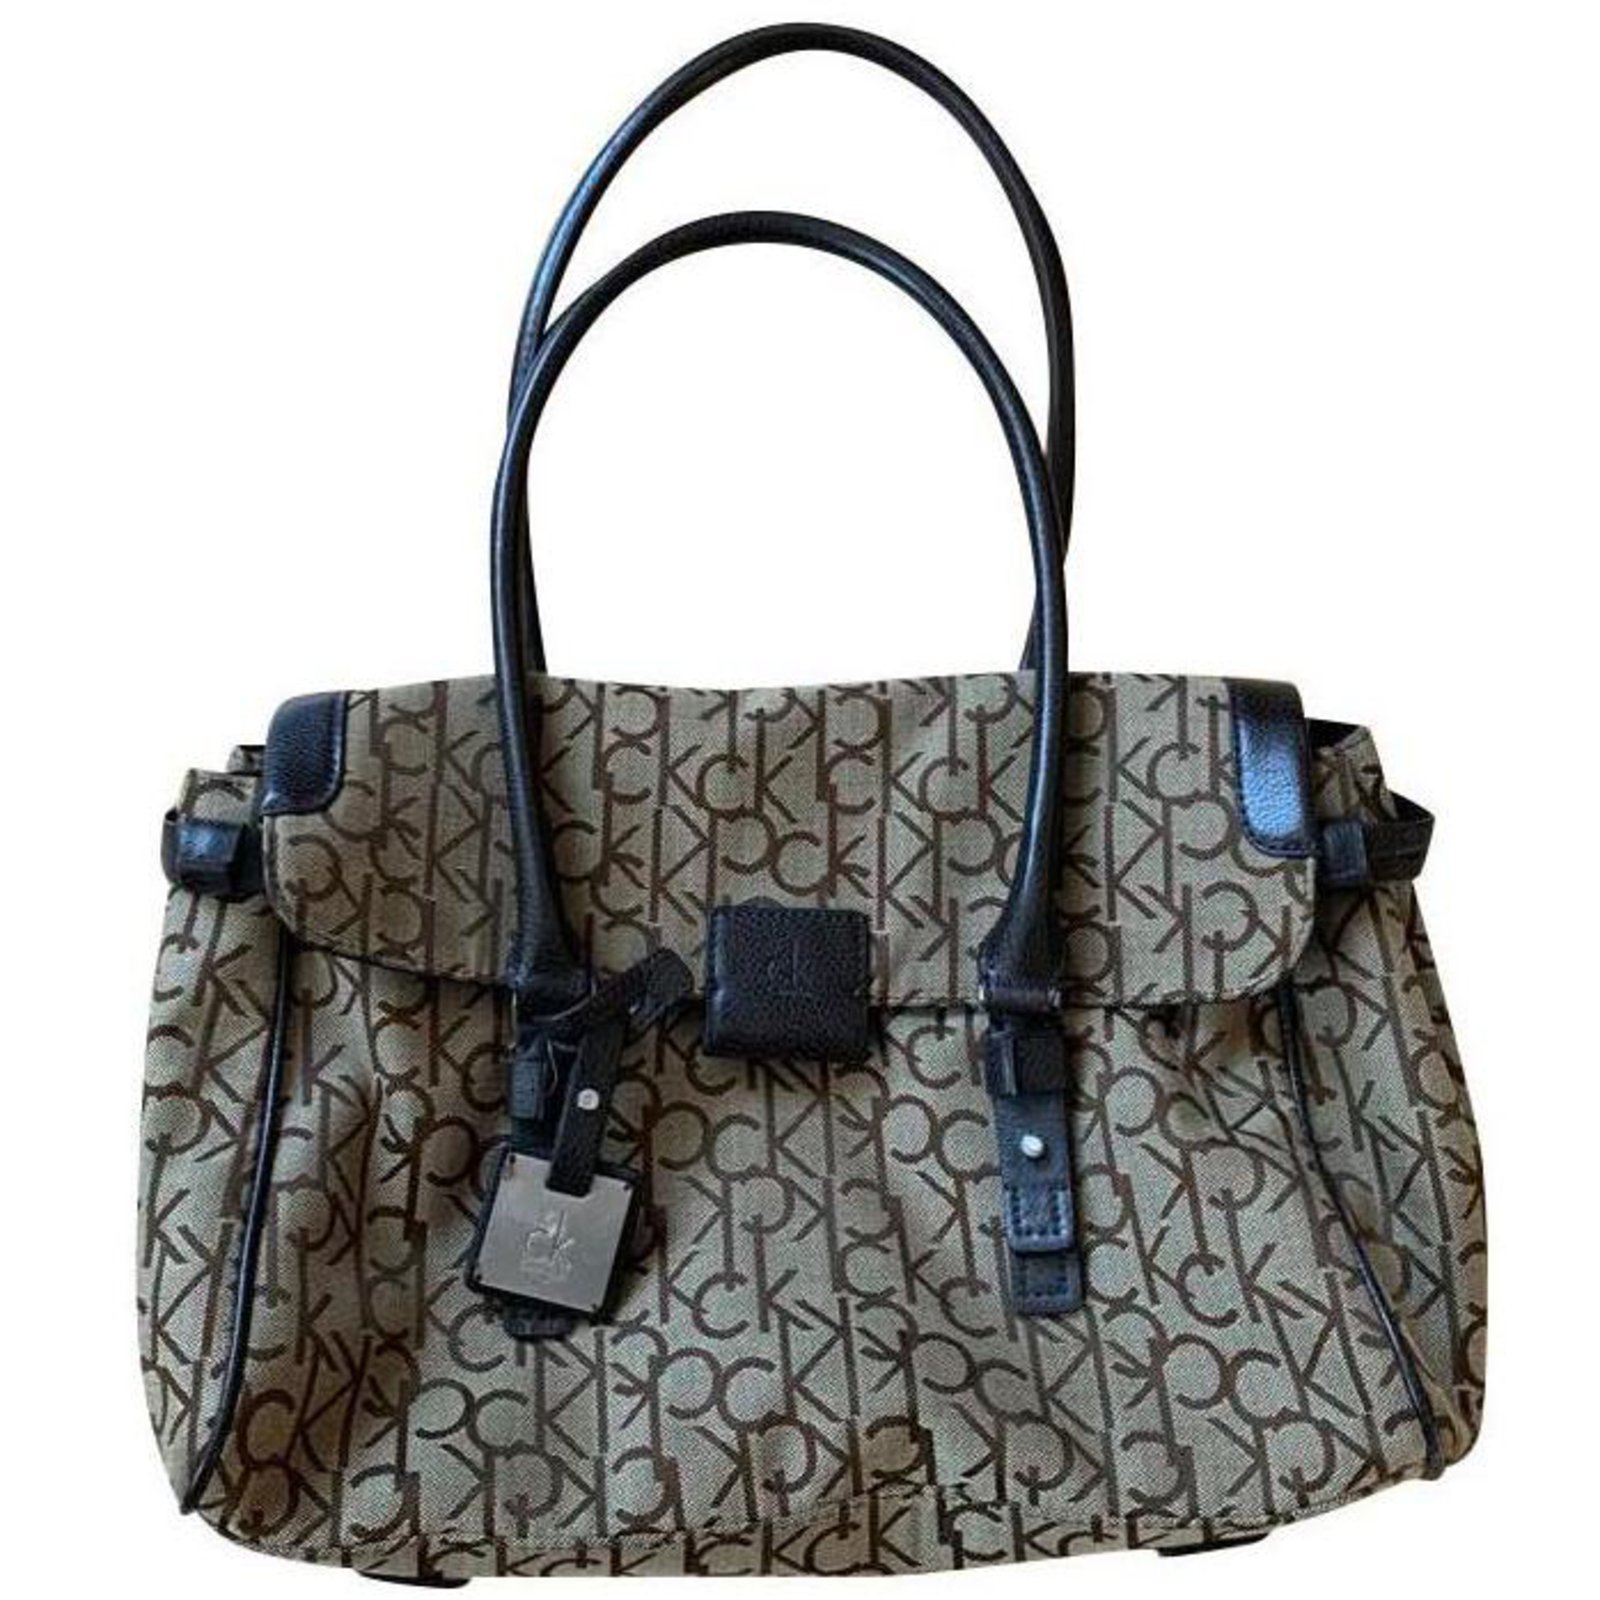 Calvin Klein Handbags, Bags